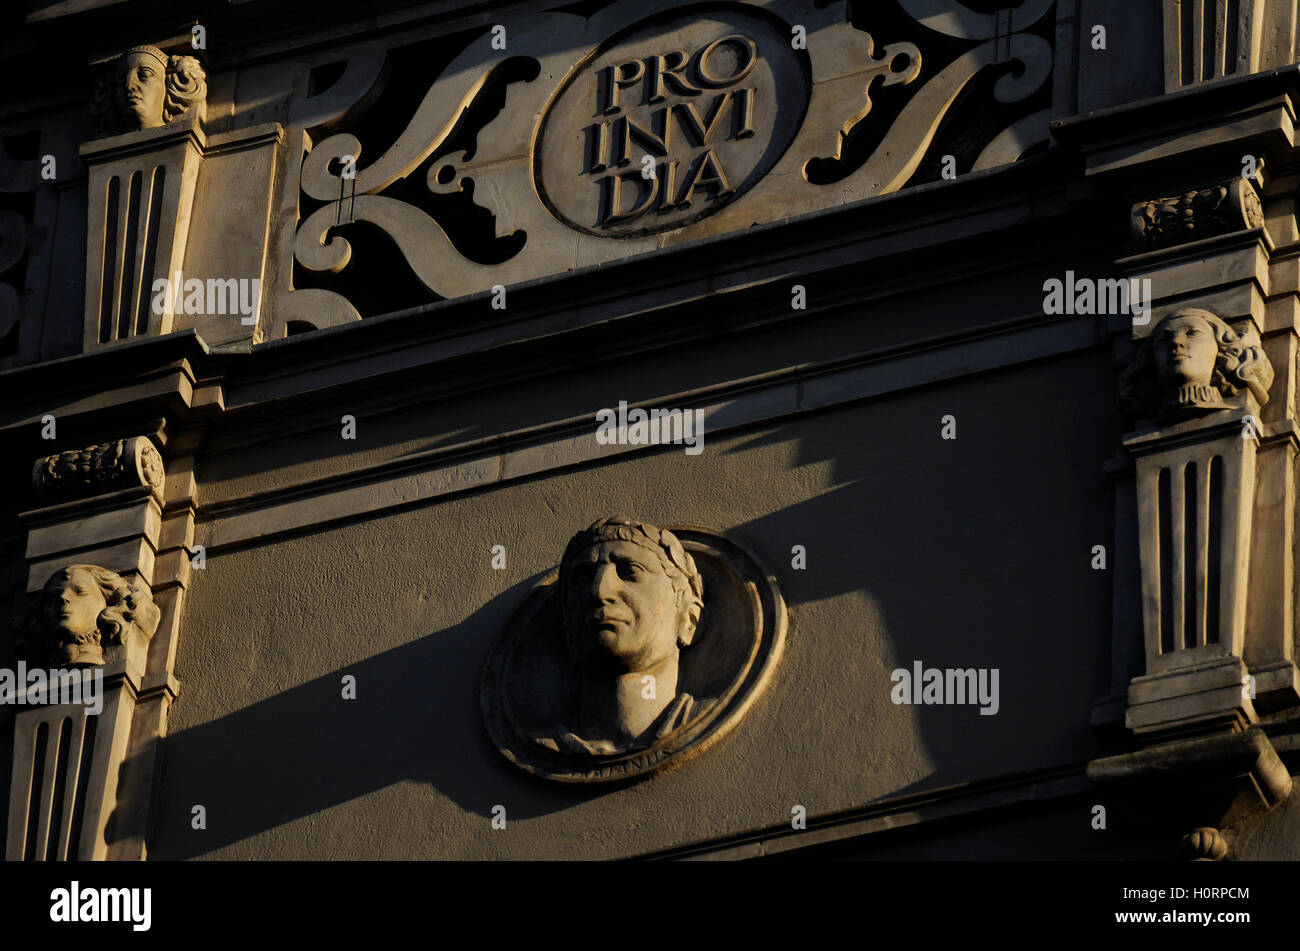 Polen. Danzig. Zentrum der Stadt. Fassade verziert mit Medaillons vom römischen Kaiser. Detail. Stockfoto